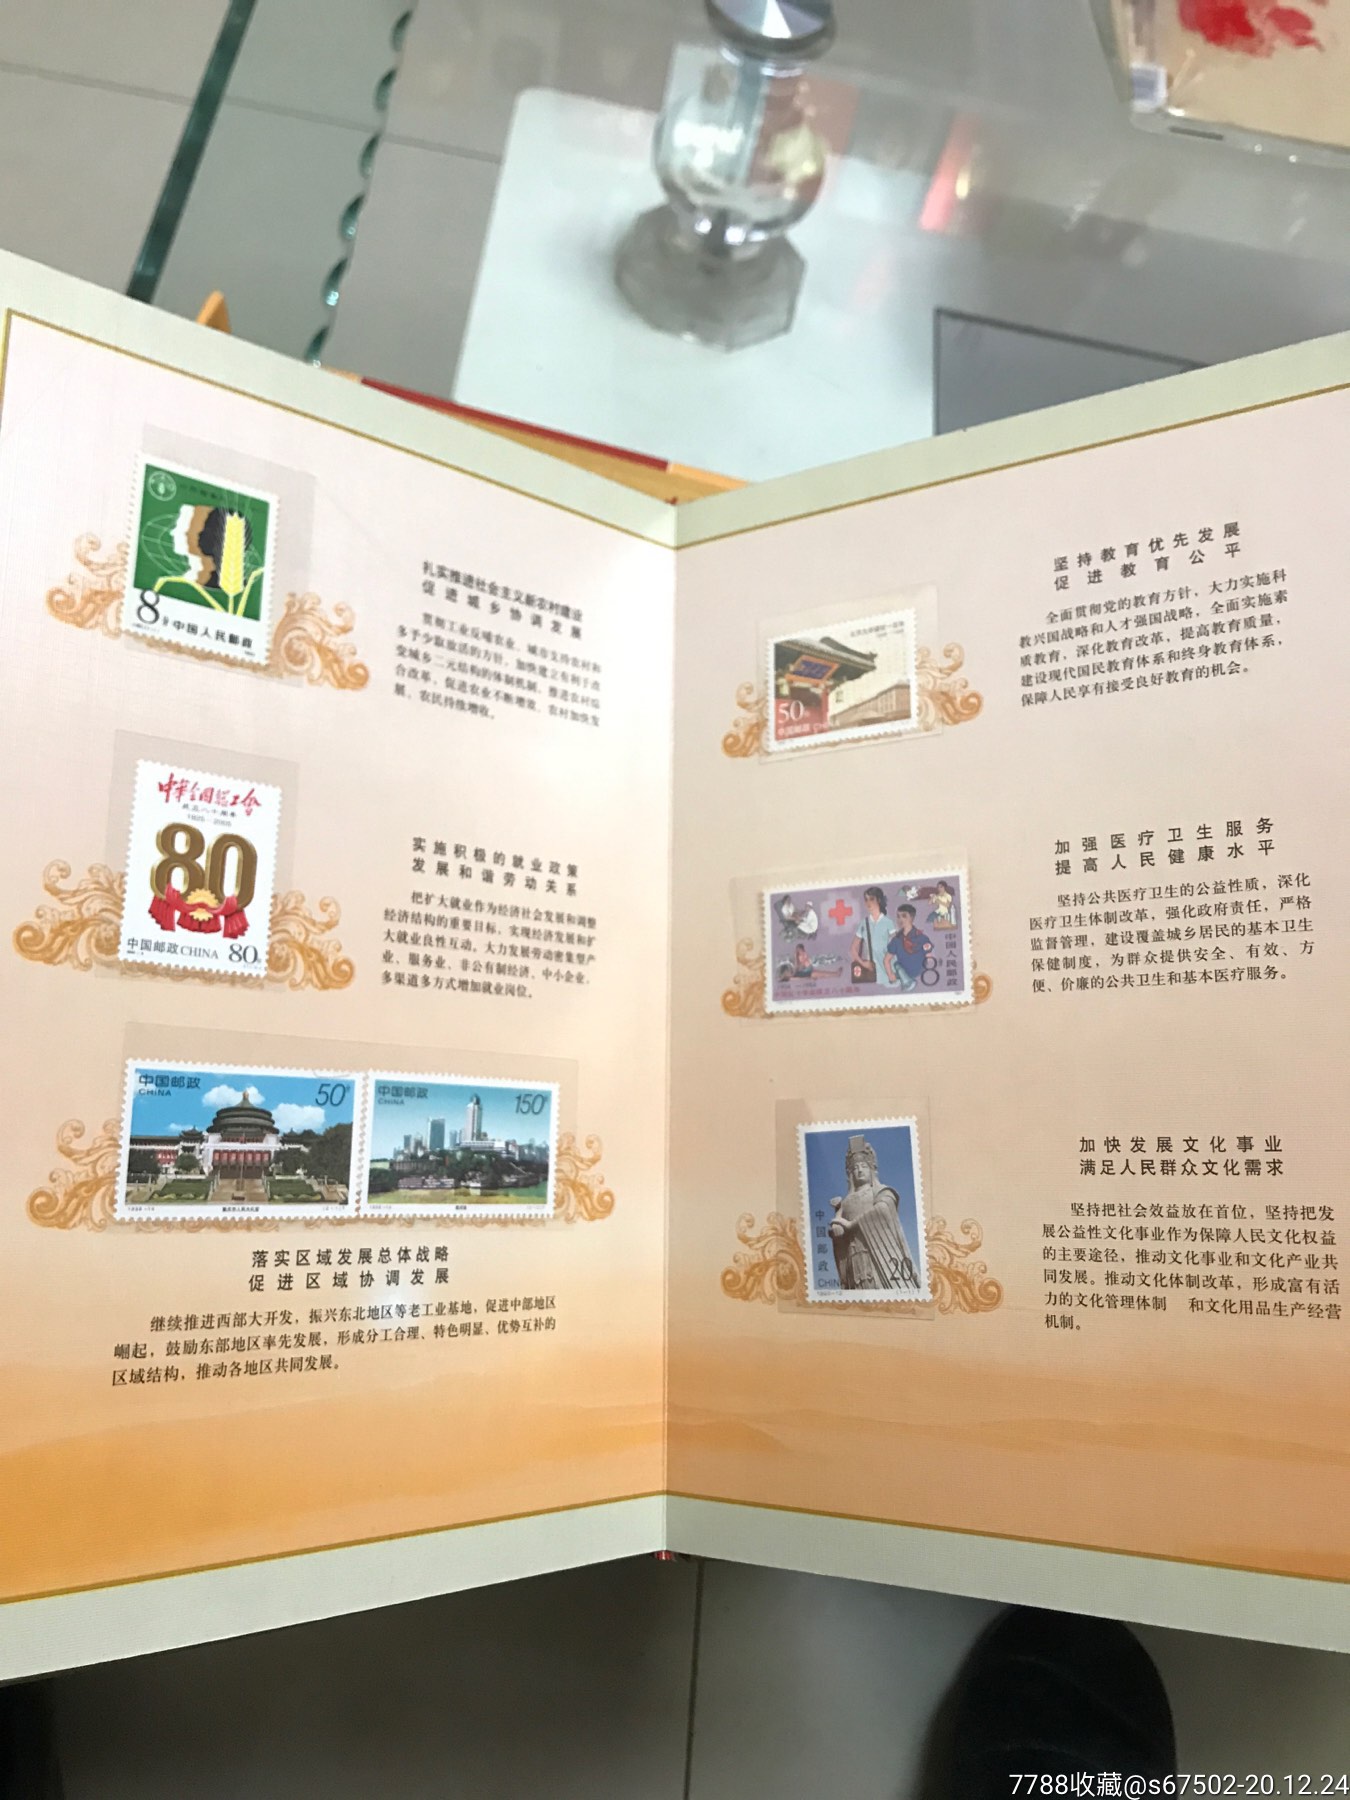 中共党史20套27枚邮票一大会址八大等成立七十周年纪念币3枚语500斤